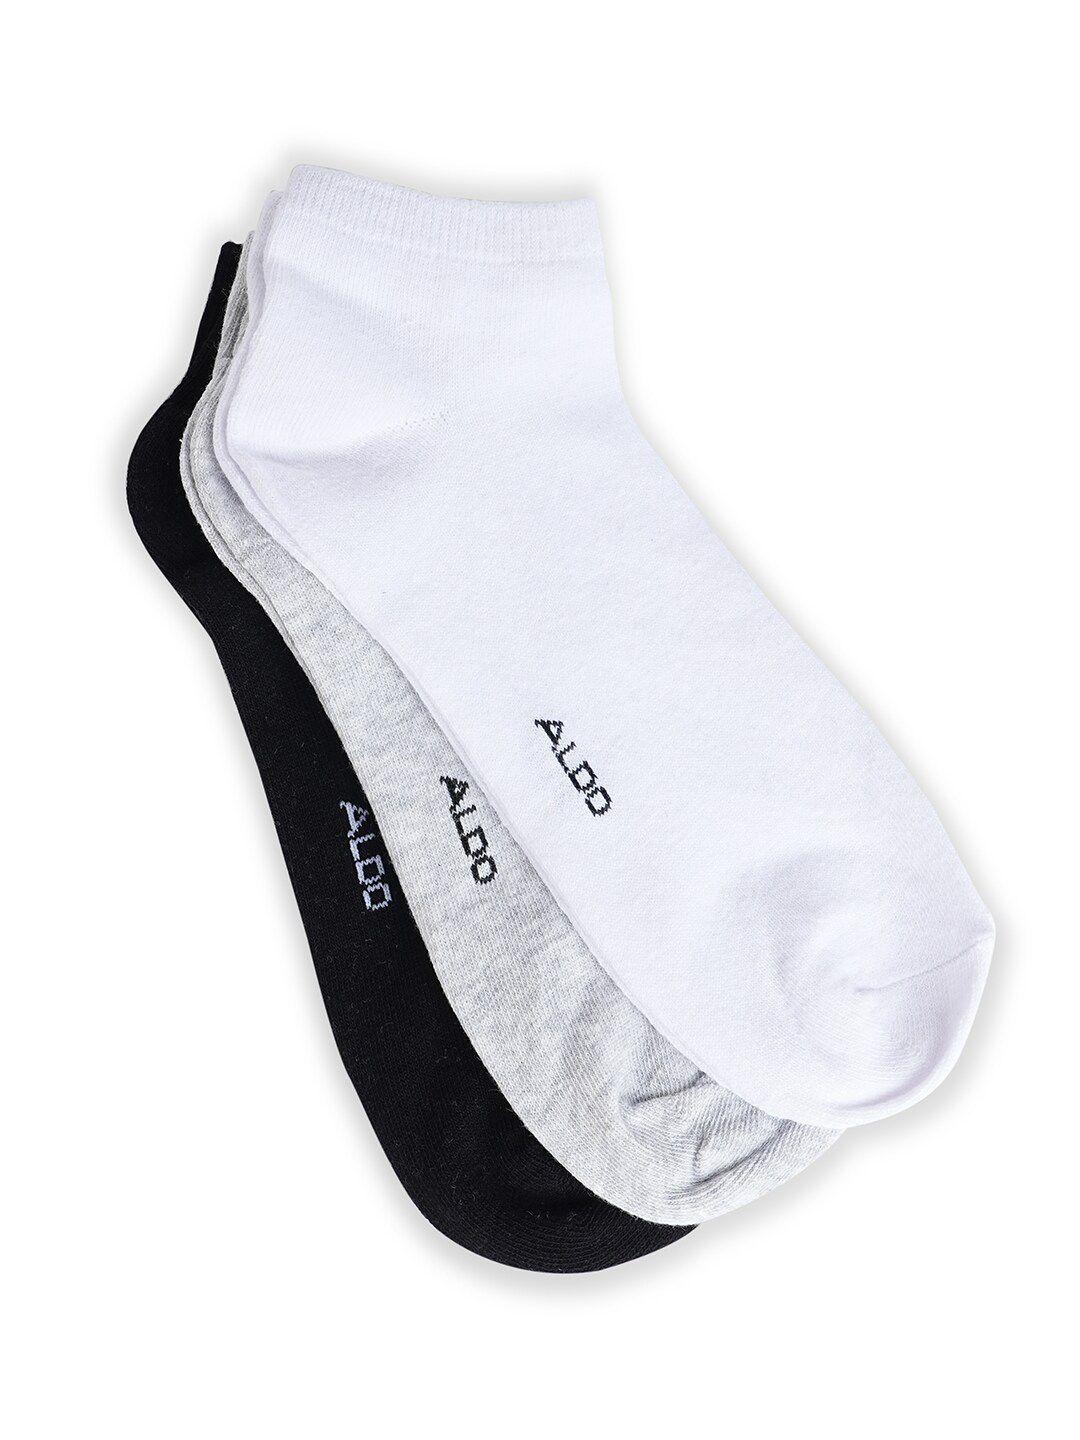 aldo-men-pack-of-3-cotton-ankle-length-socks